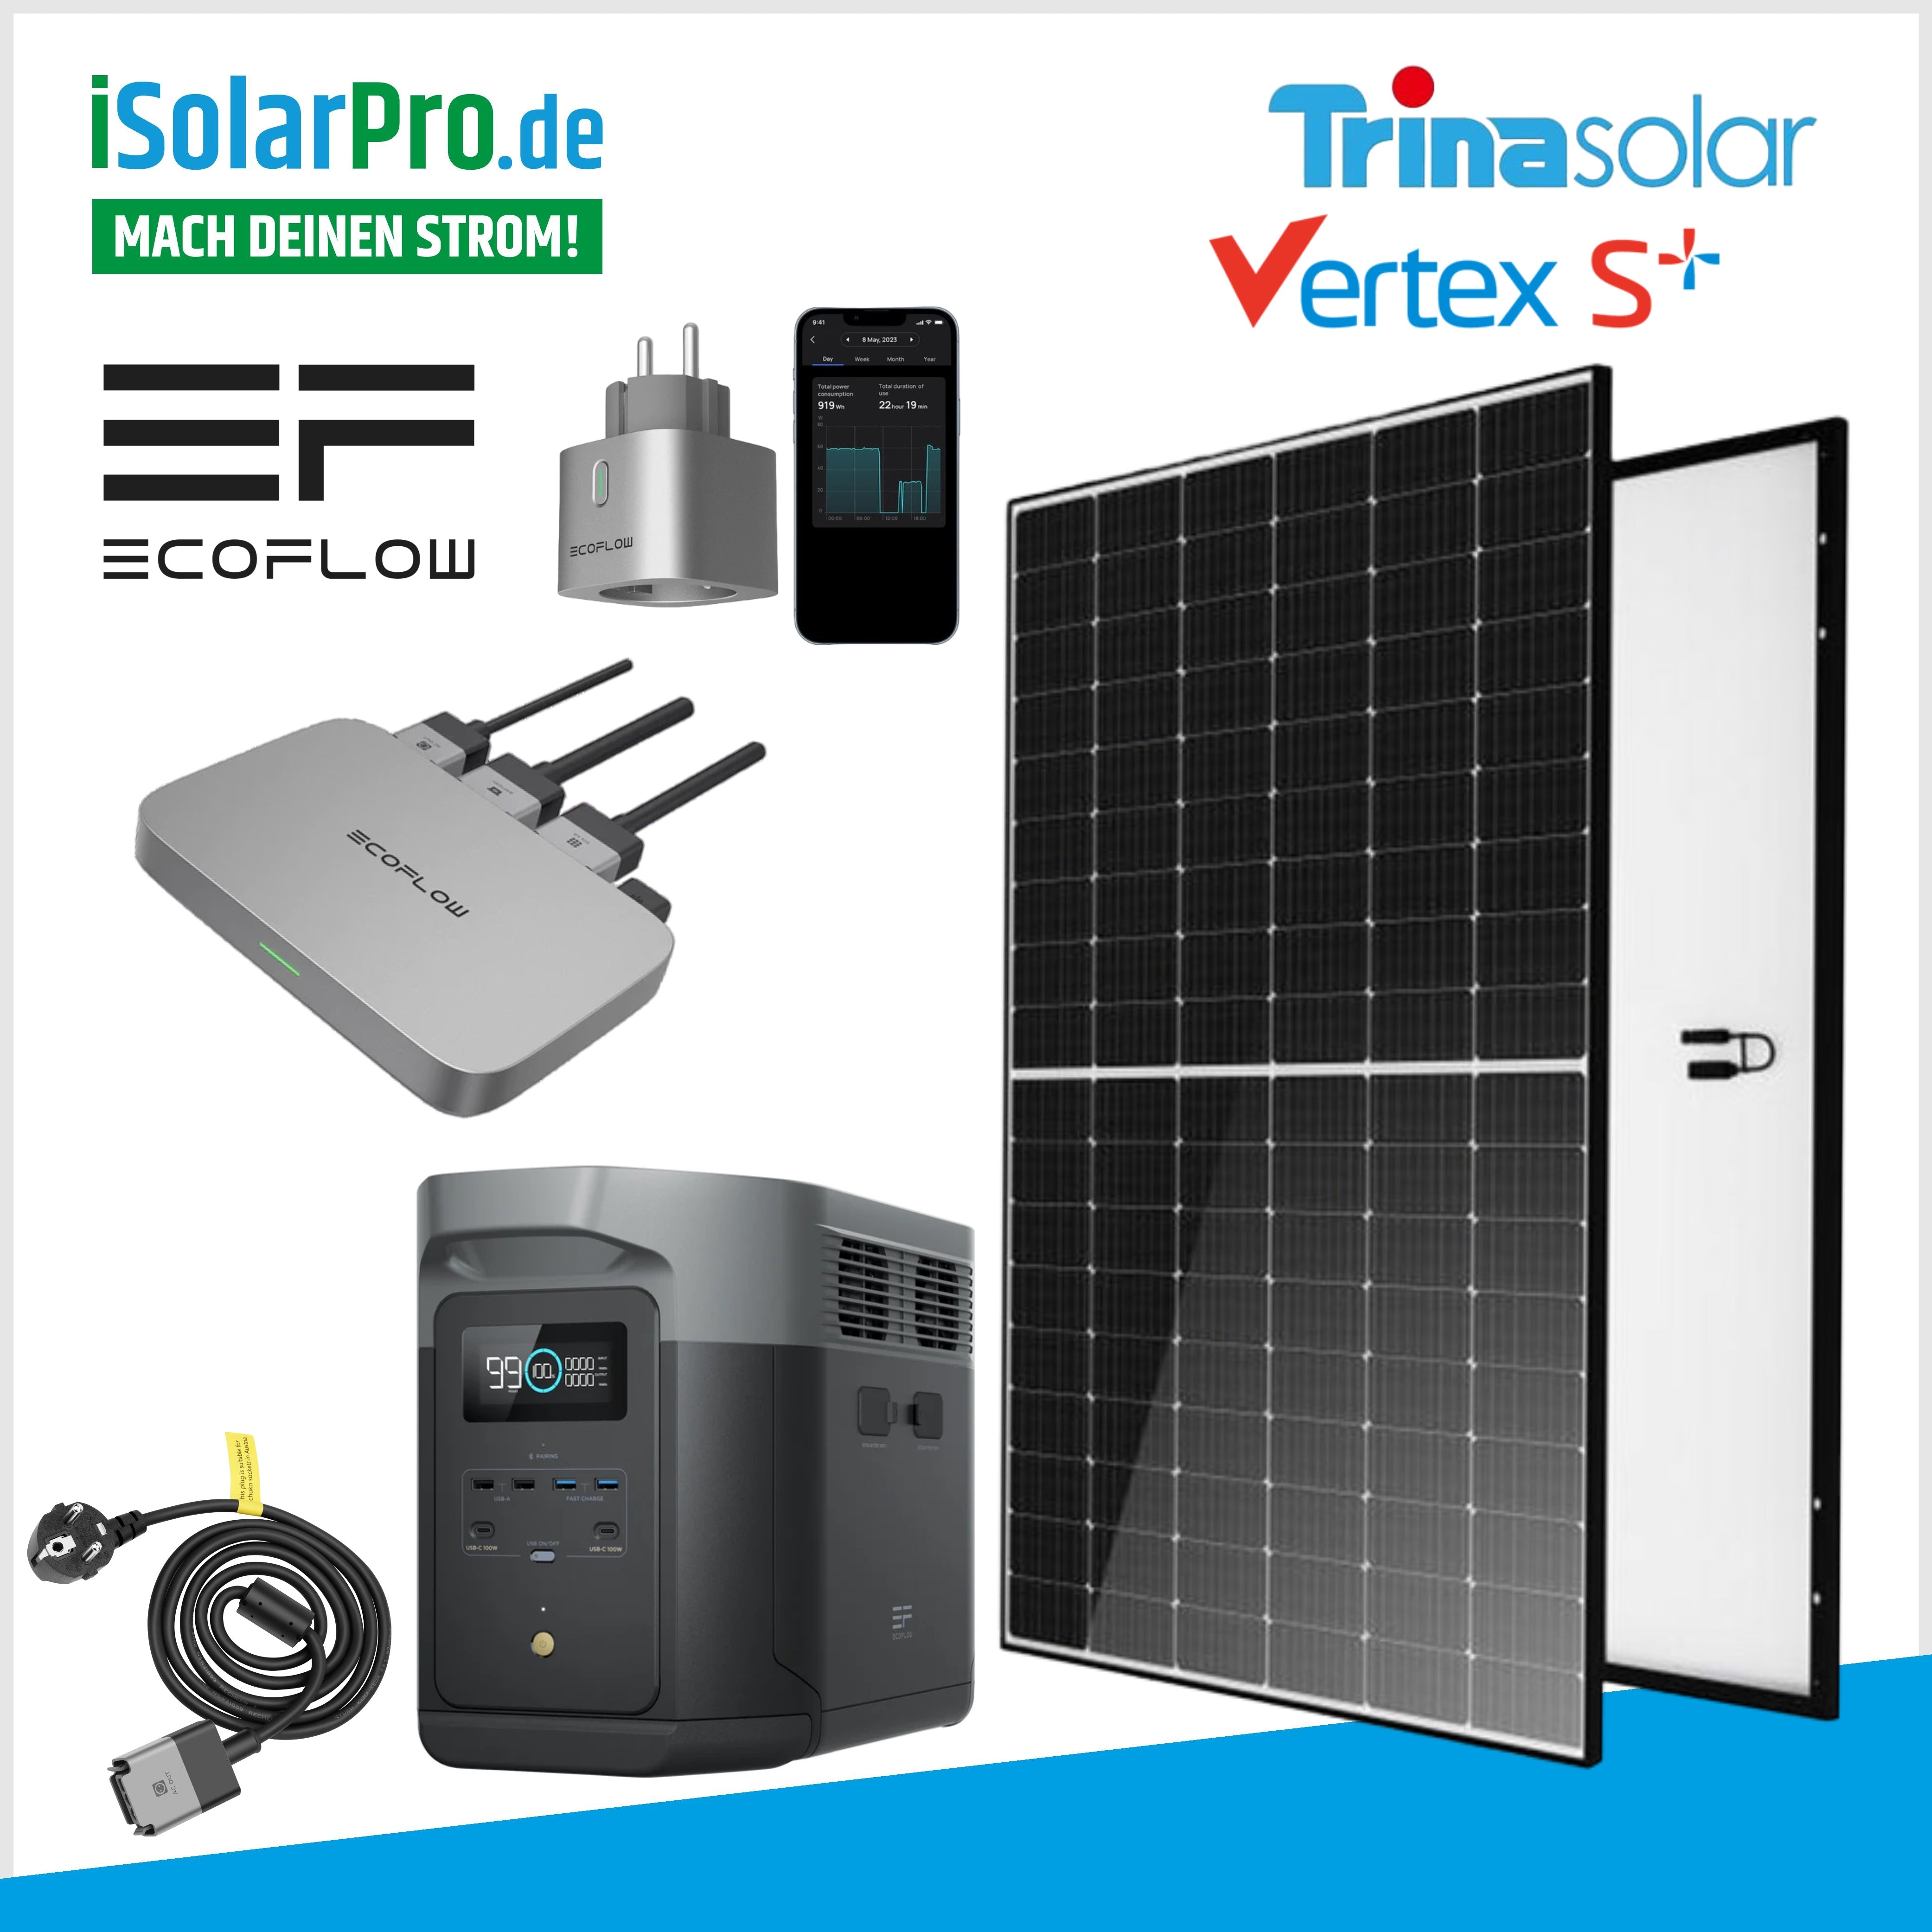 EcoFlow PowerStream 1 Simple way to Home Solar & Savings